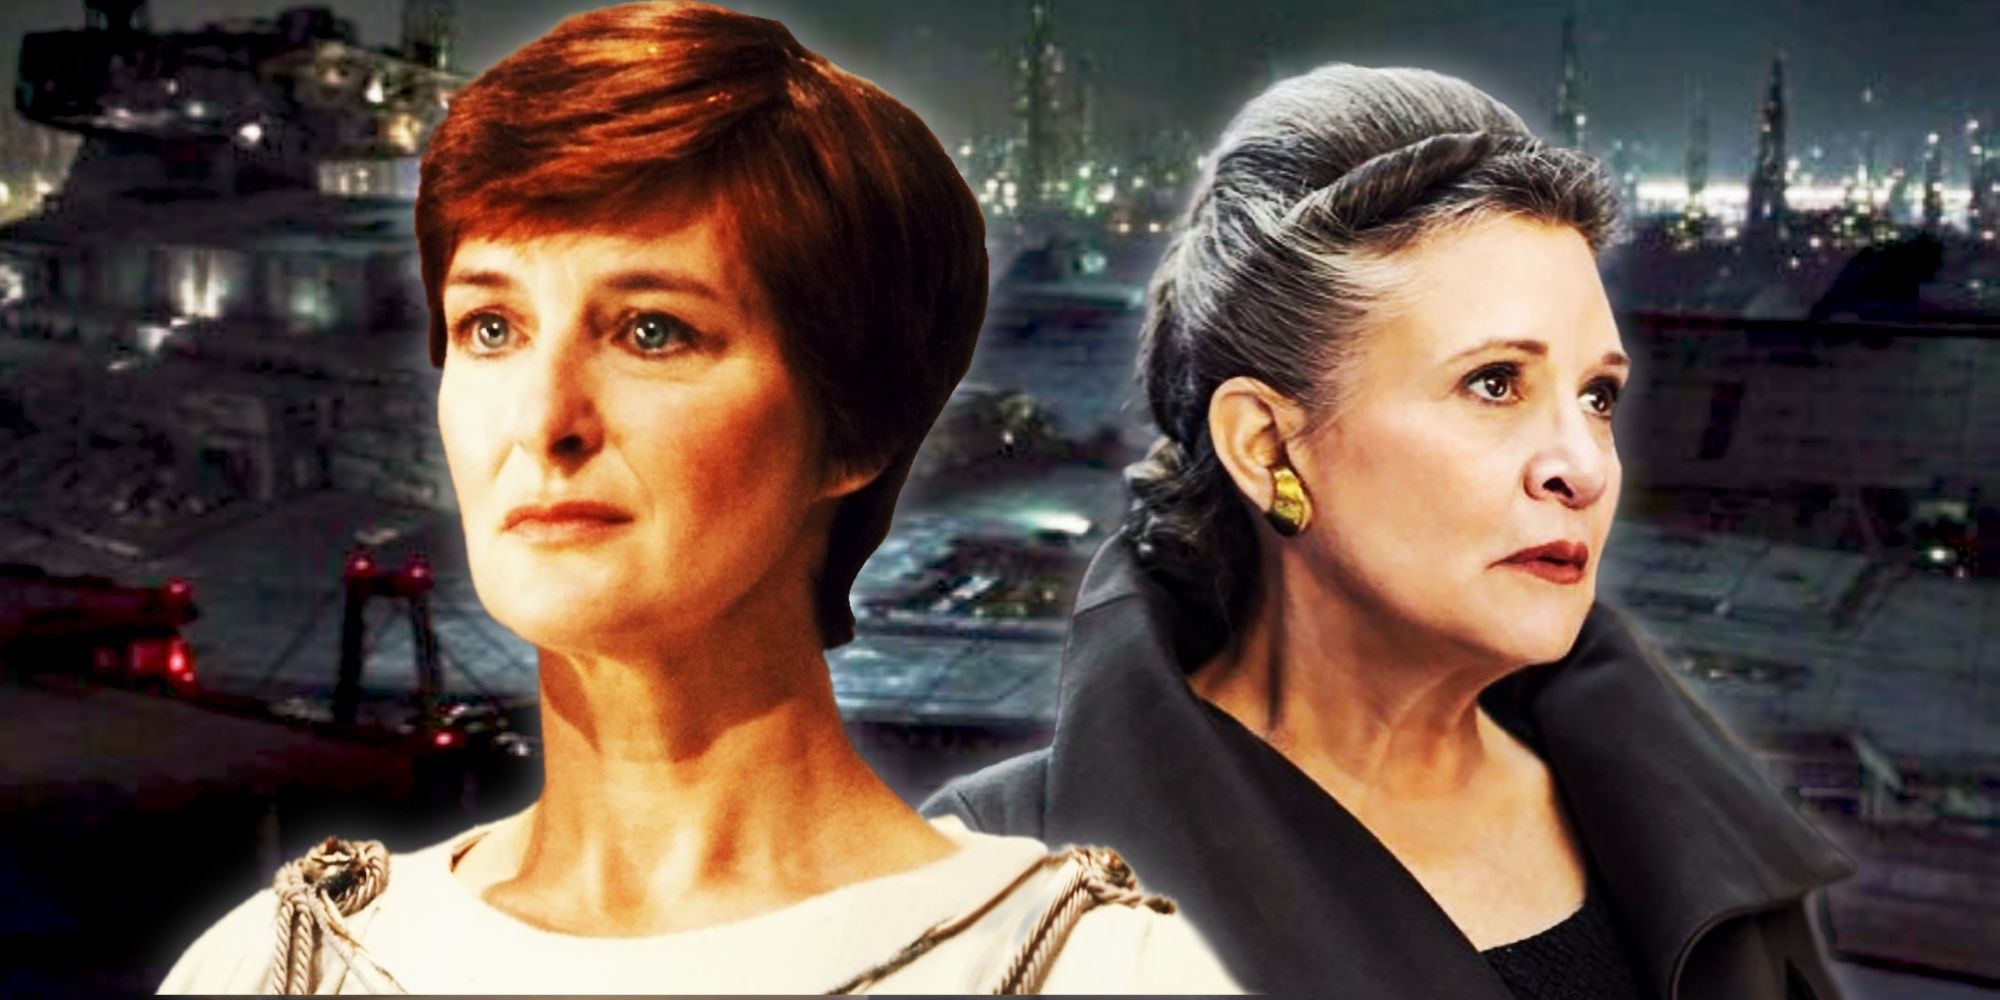 Mon Mothma, Princess Leia, and the Coruscant shipyards.